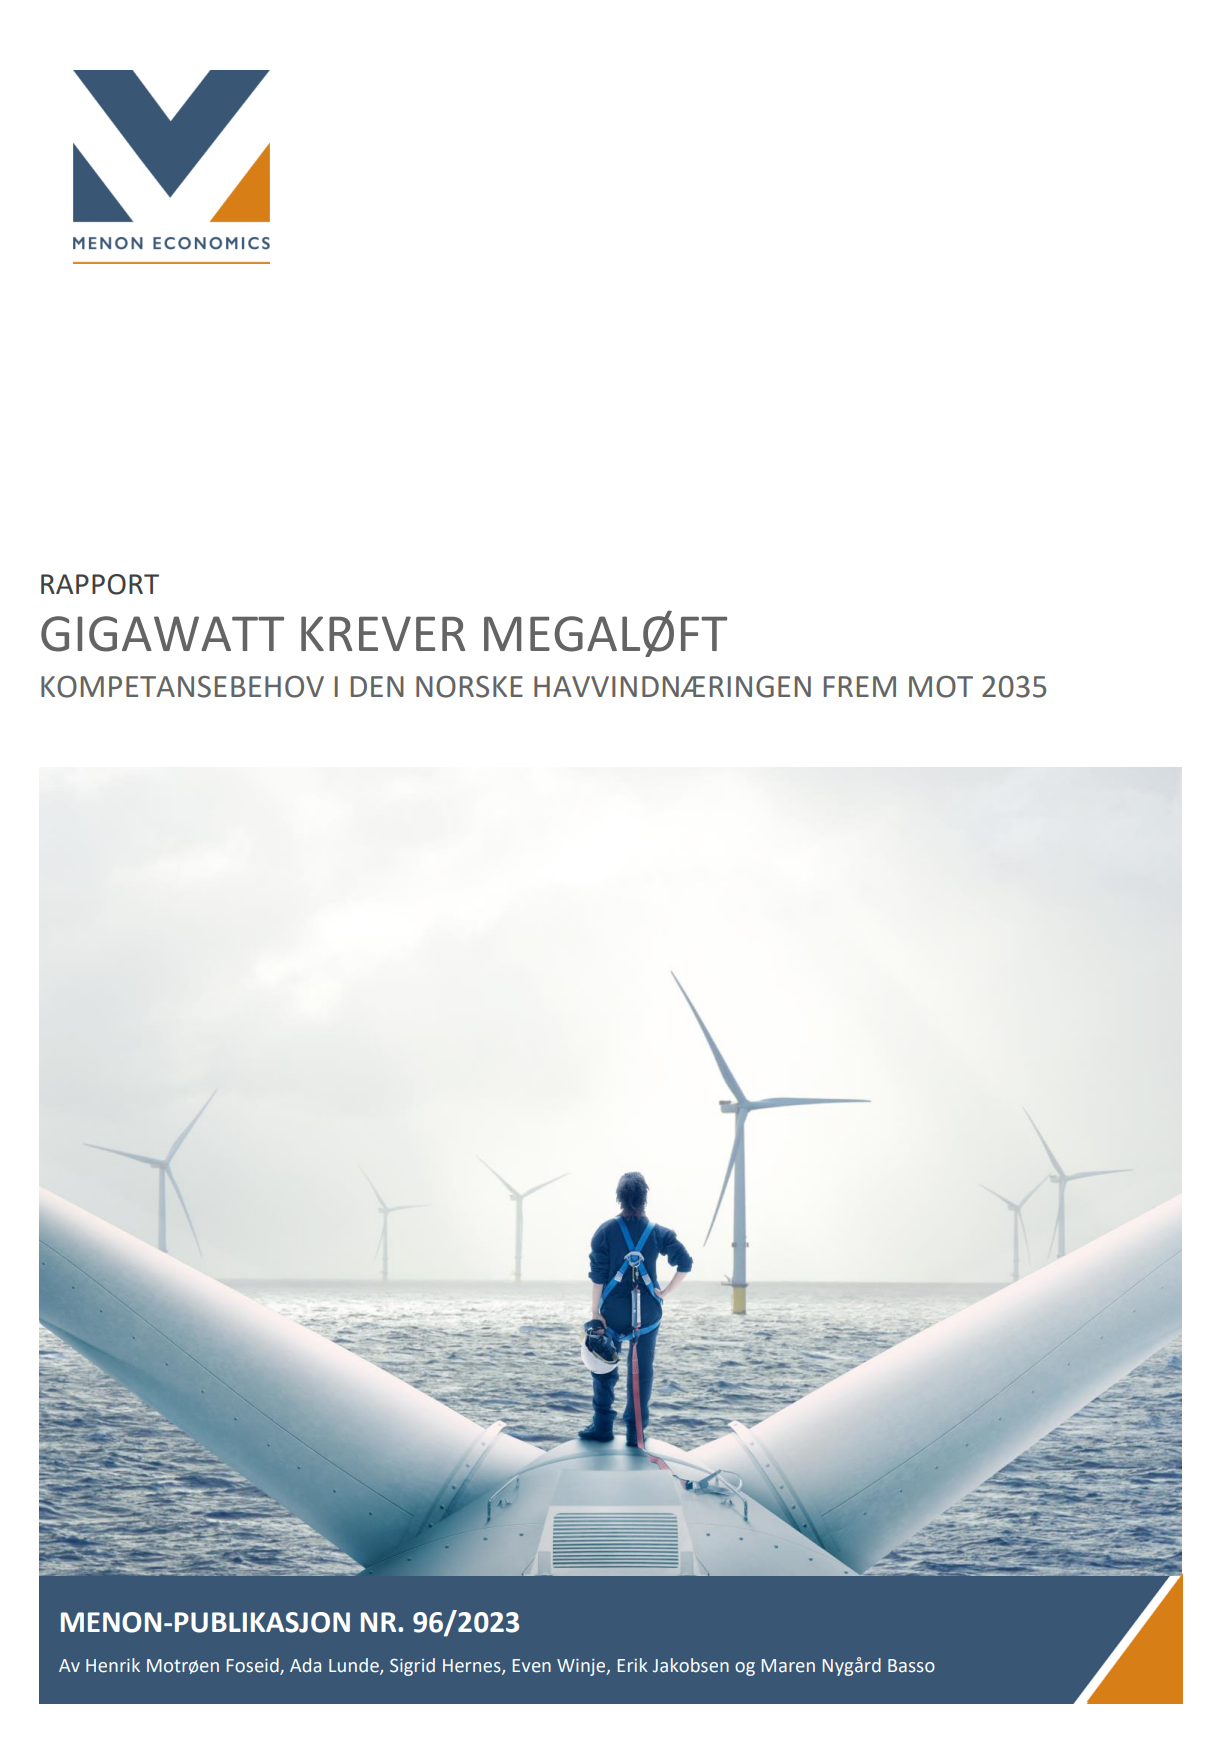 Gigawatt krever megaløft: Kompetansebehov i den norske havvindnæringen frem mot 2035